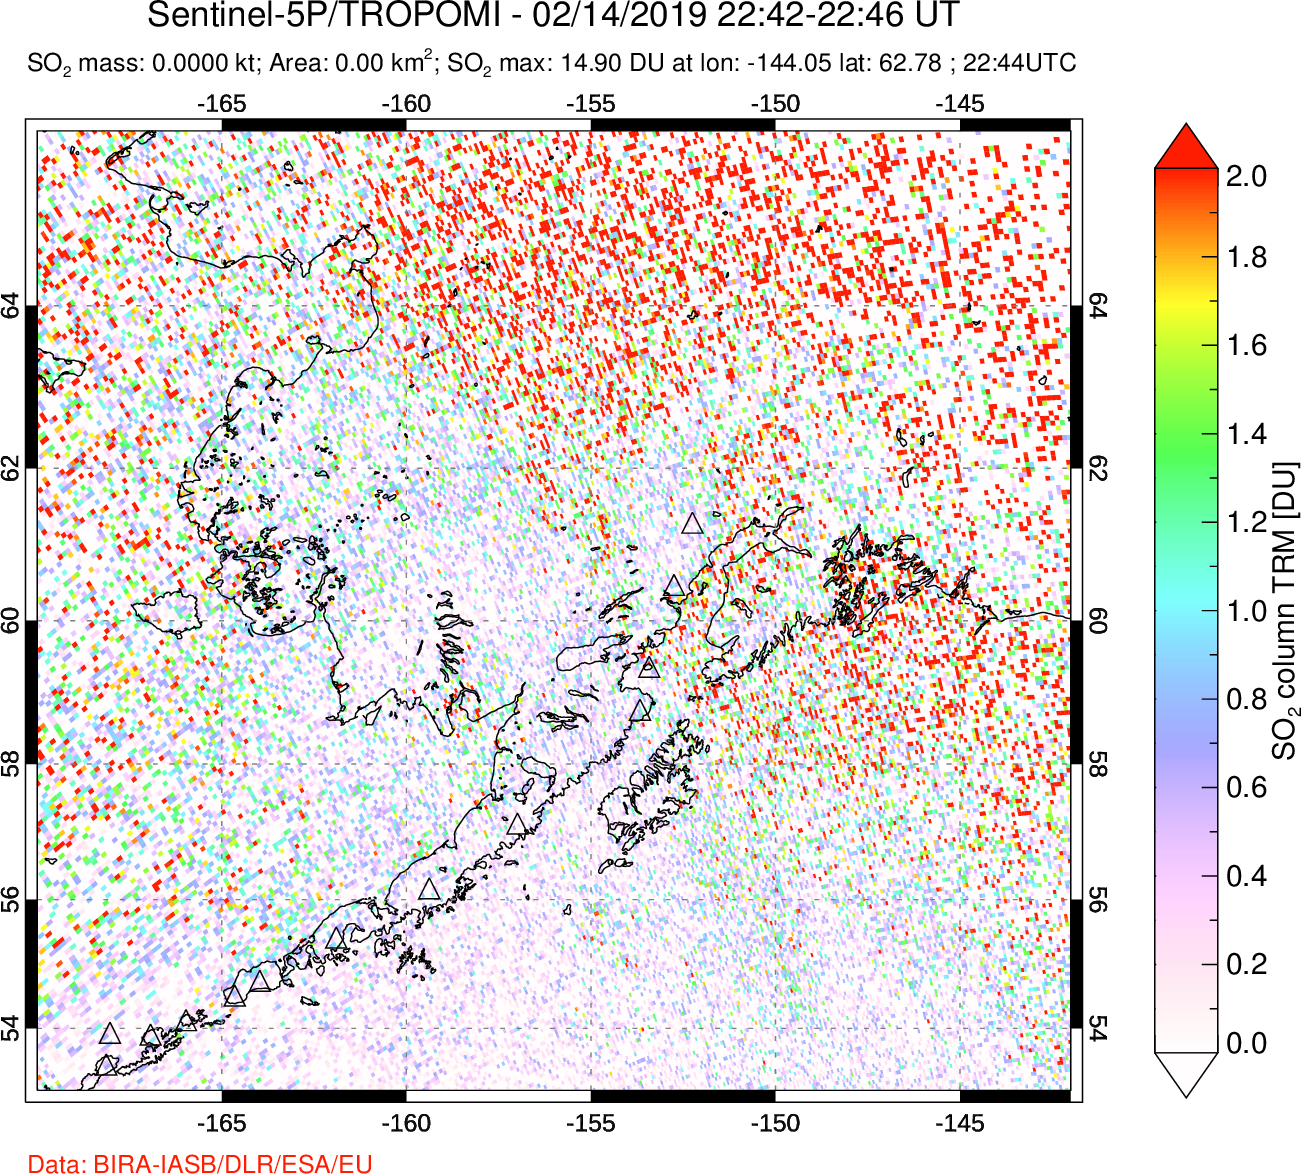 A sulfur dioxide image over Alaska, USA on Feb 14, 2019.